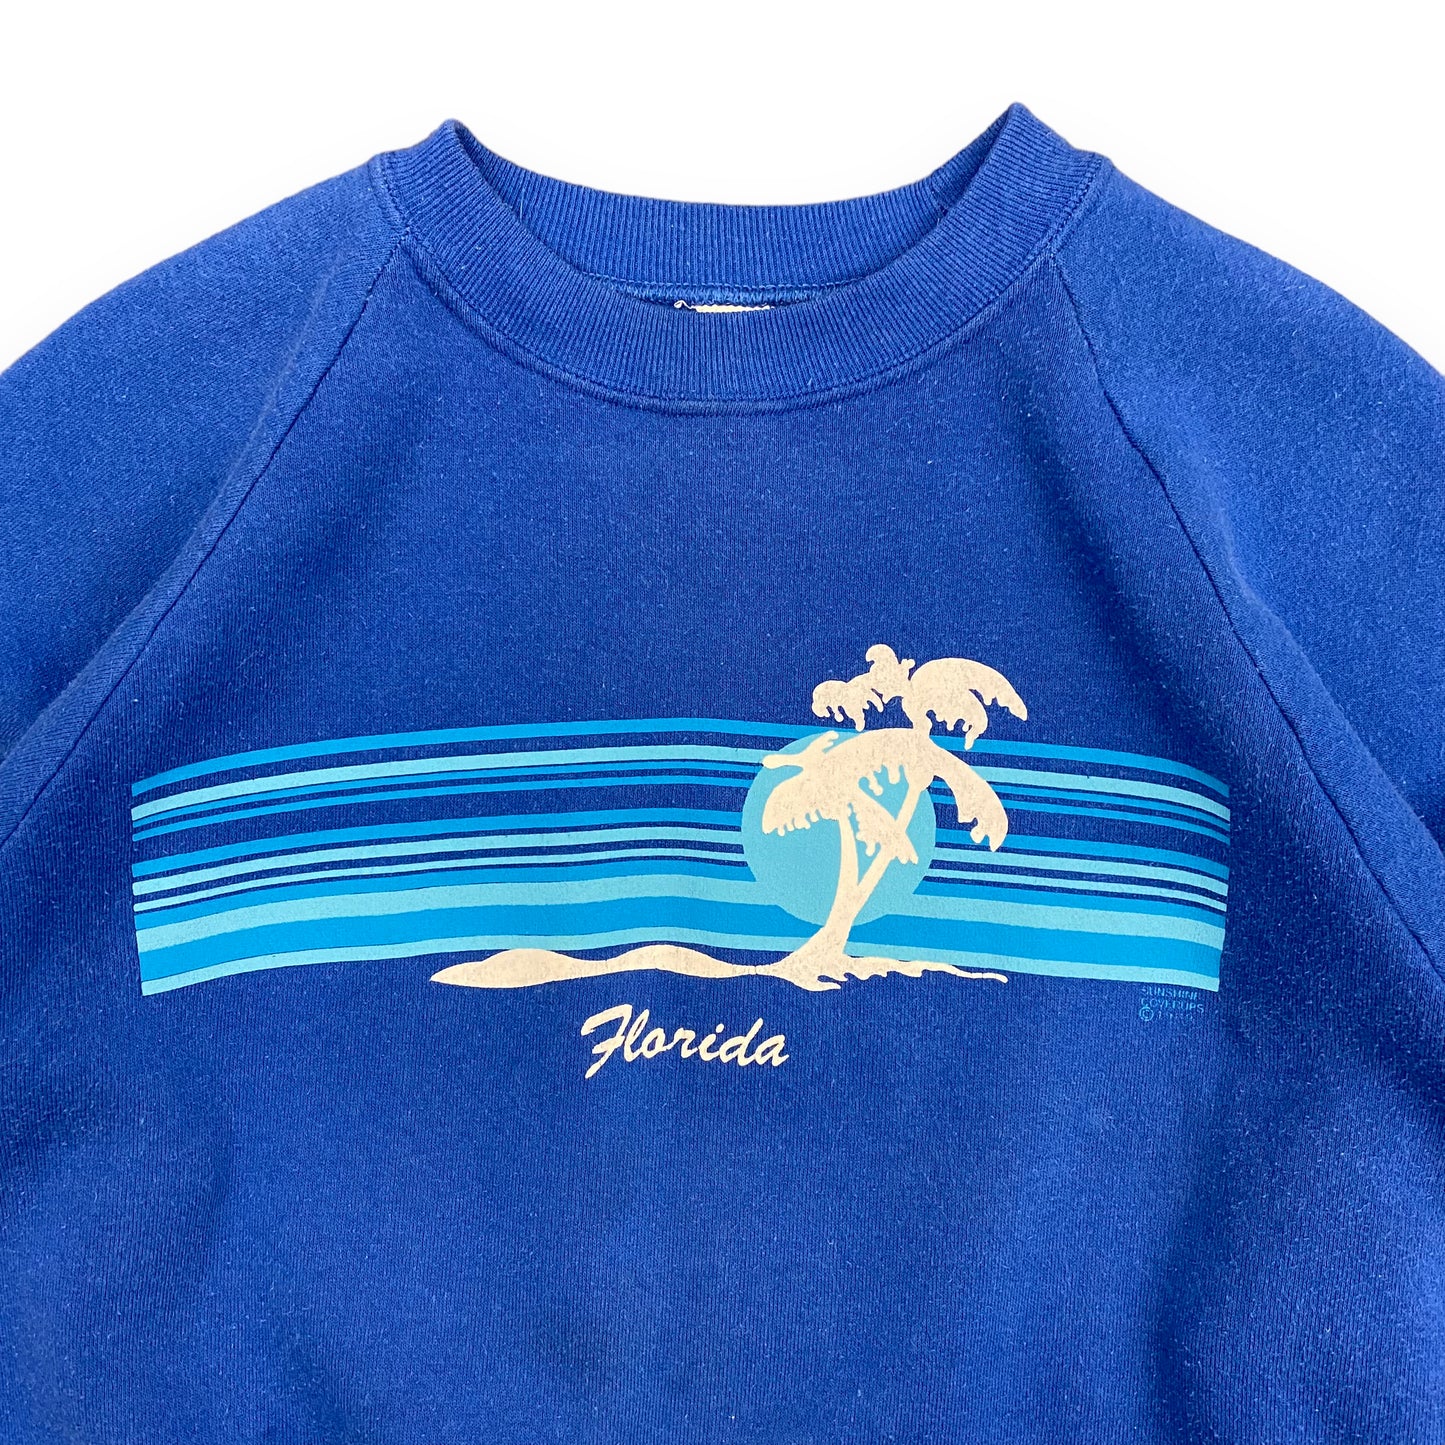 1980s "Florida" Blue Raglan Sweatshirt - Size Large